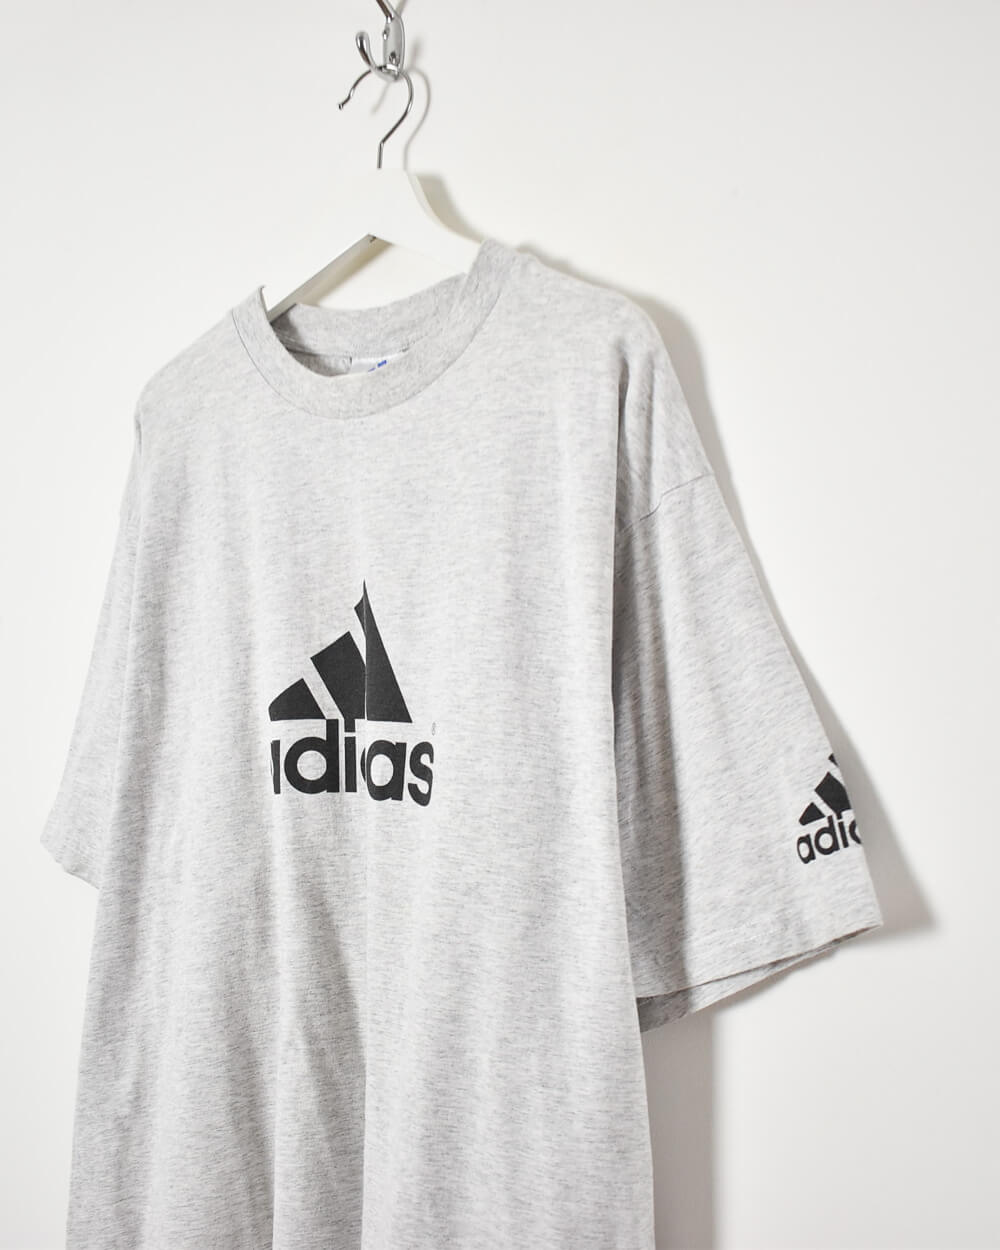 Stone Adidas T-Shirt - X-Large